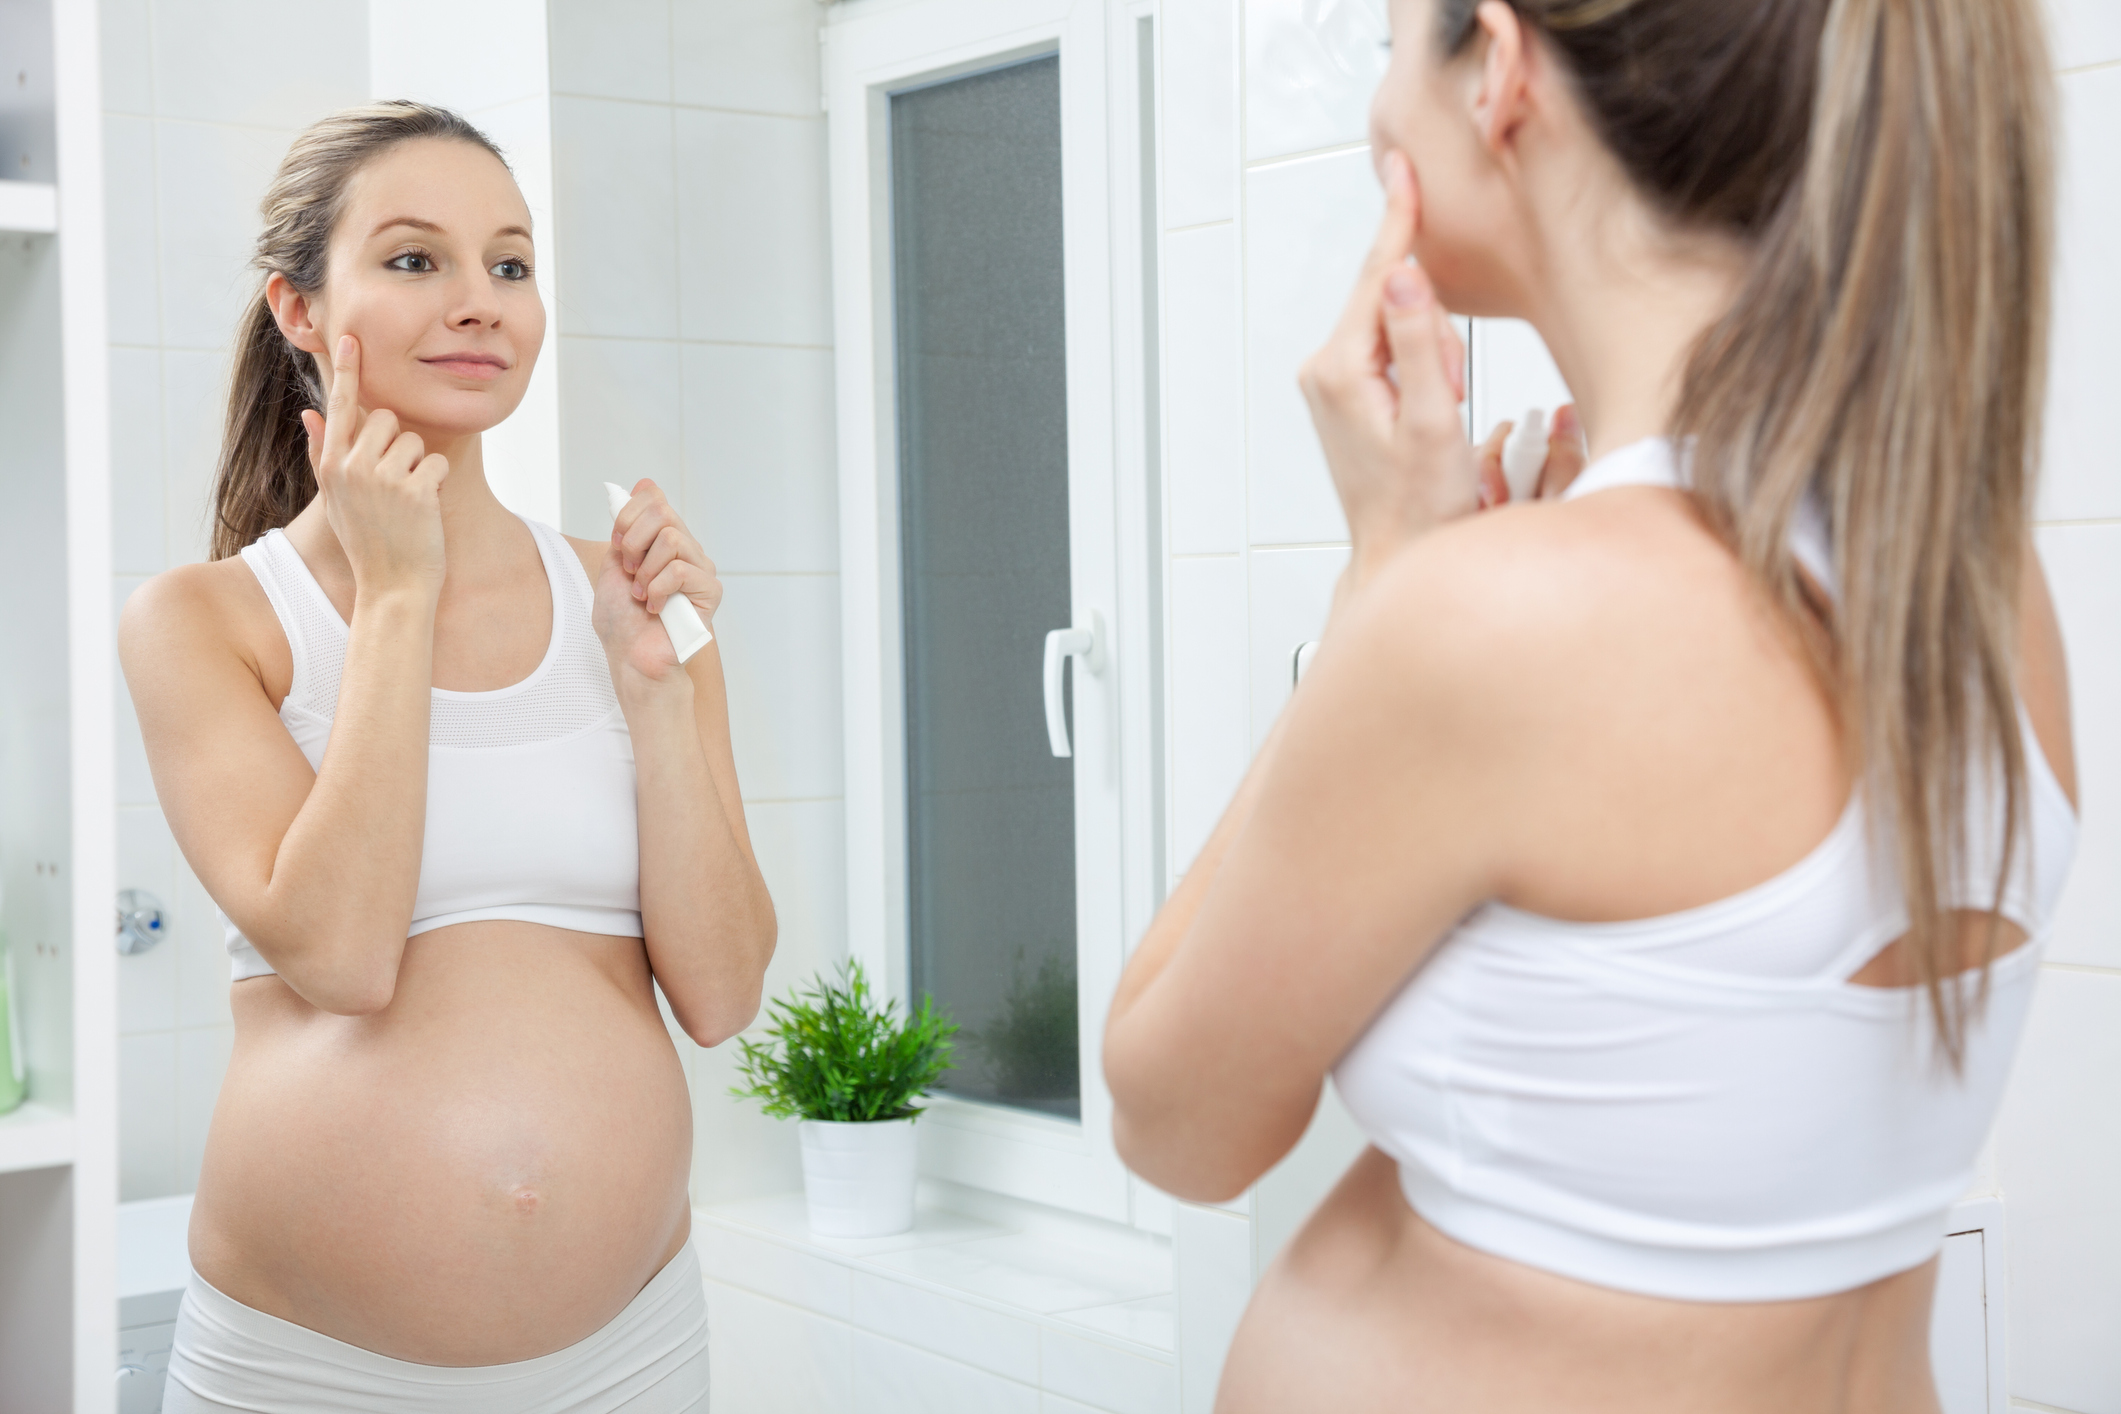 прыщи во время беременности как лечить, акне во время беременности что делать, уход за кожей во время беременности, уход за лицом во время беременности